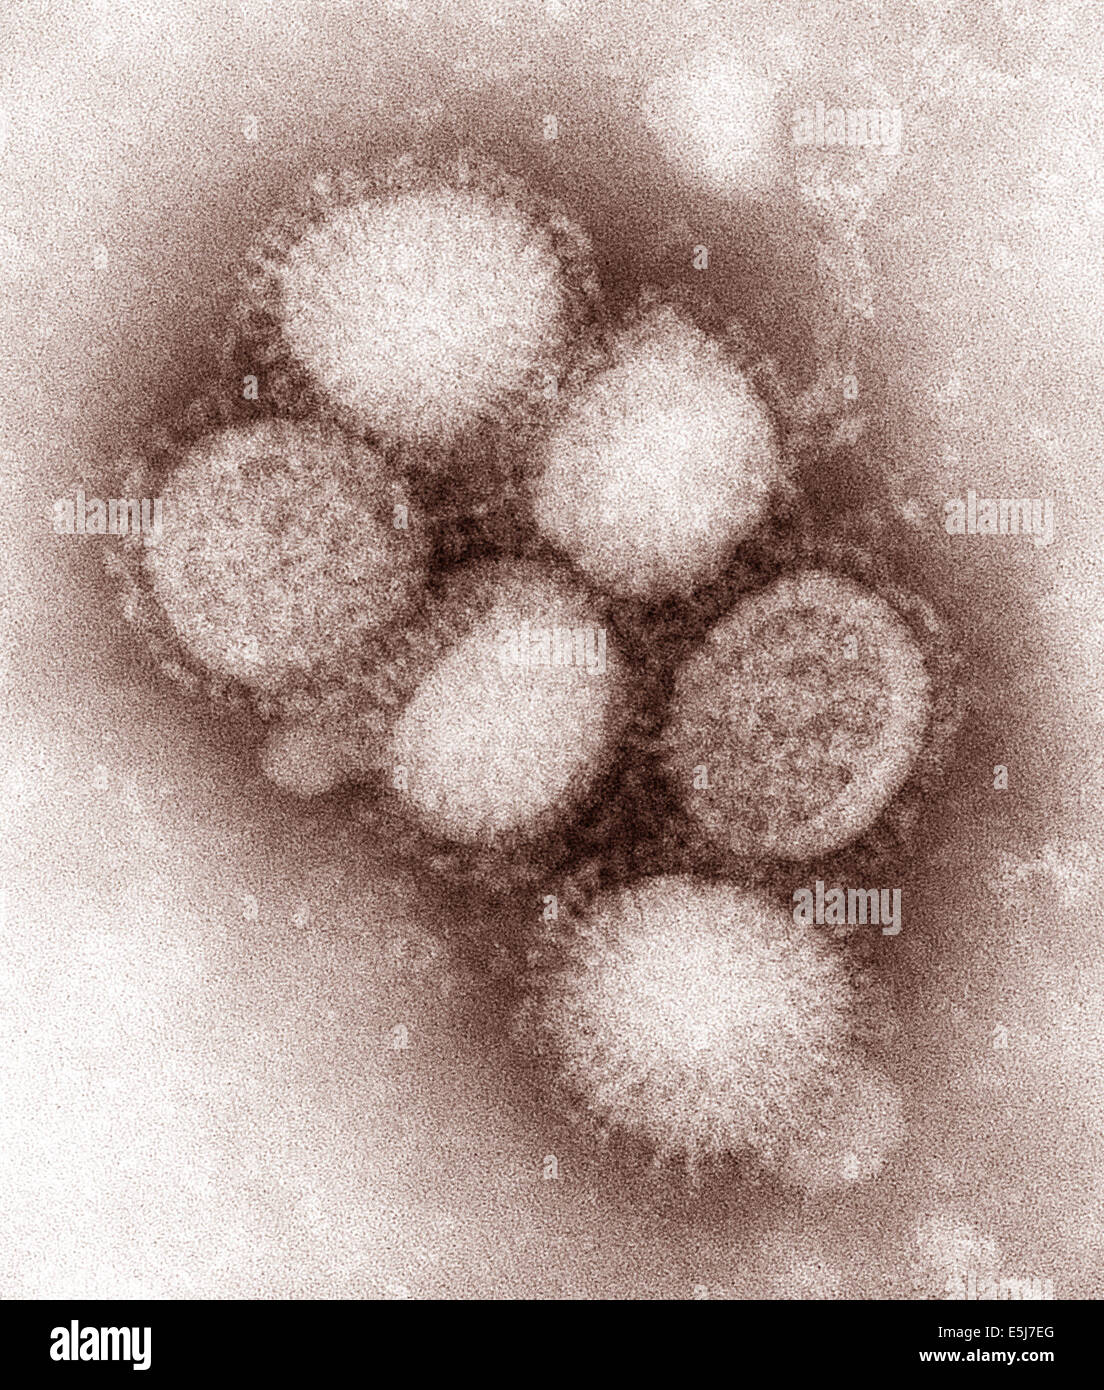 Das H1N1-Virus, das verursacht eine Pandemie ist jetzt eine regelmäßige menschlichen Grippevirus und saisonal weltweit zirkulieren weiterhin. Aus dem Archiv des Pressedienstes Portrait. Stockfoto